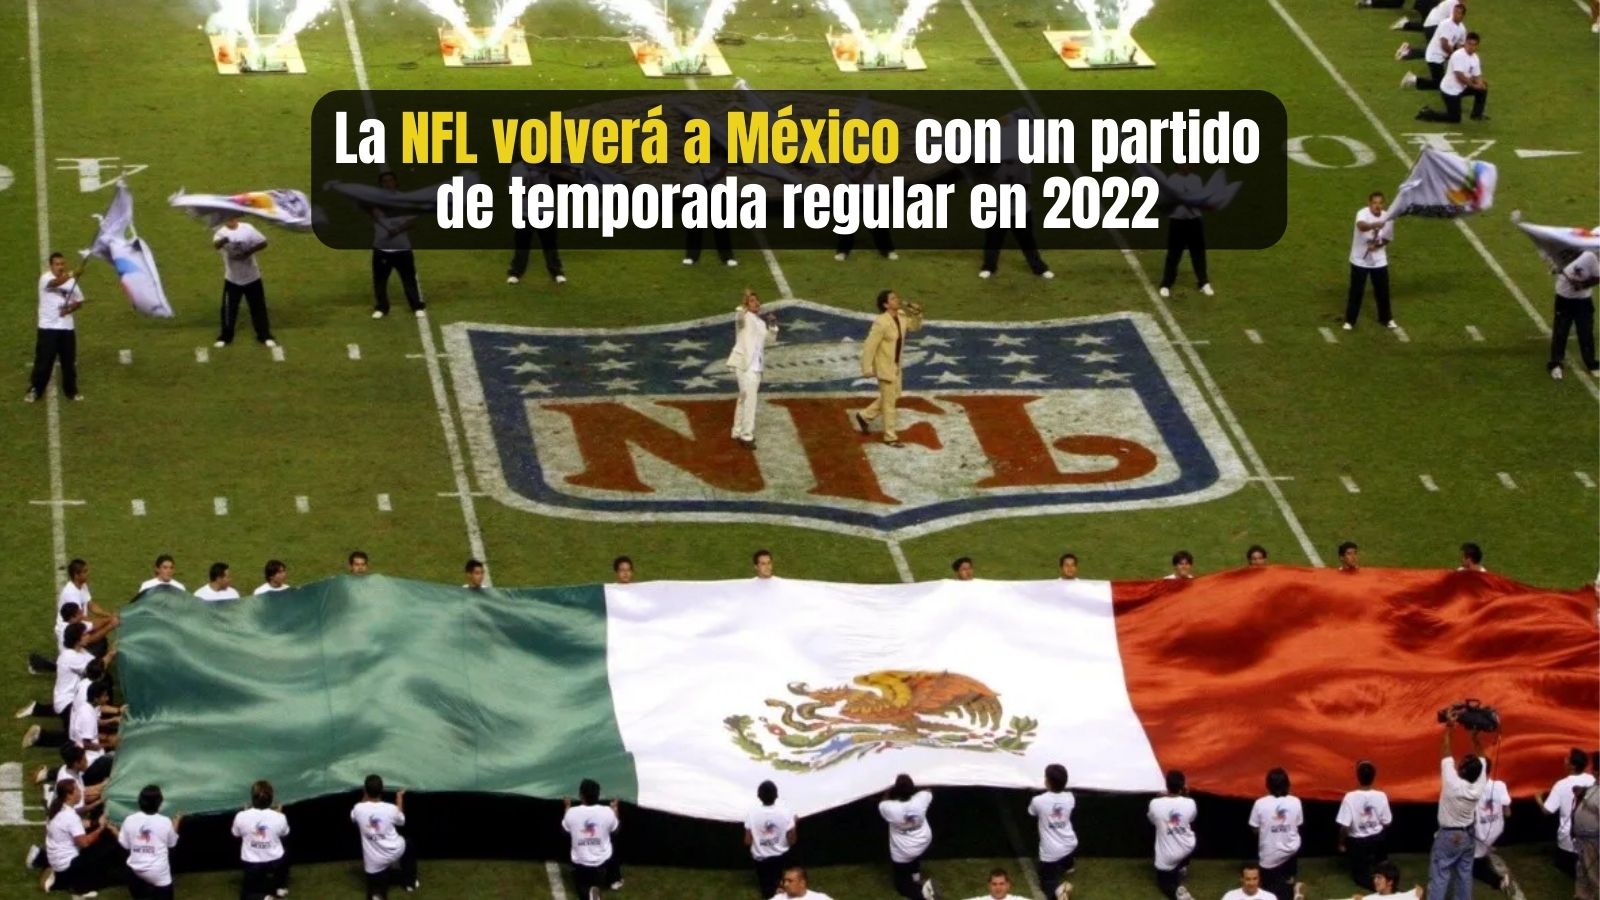 NFL volverá a México con partido de temporada regular